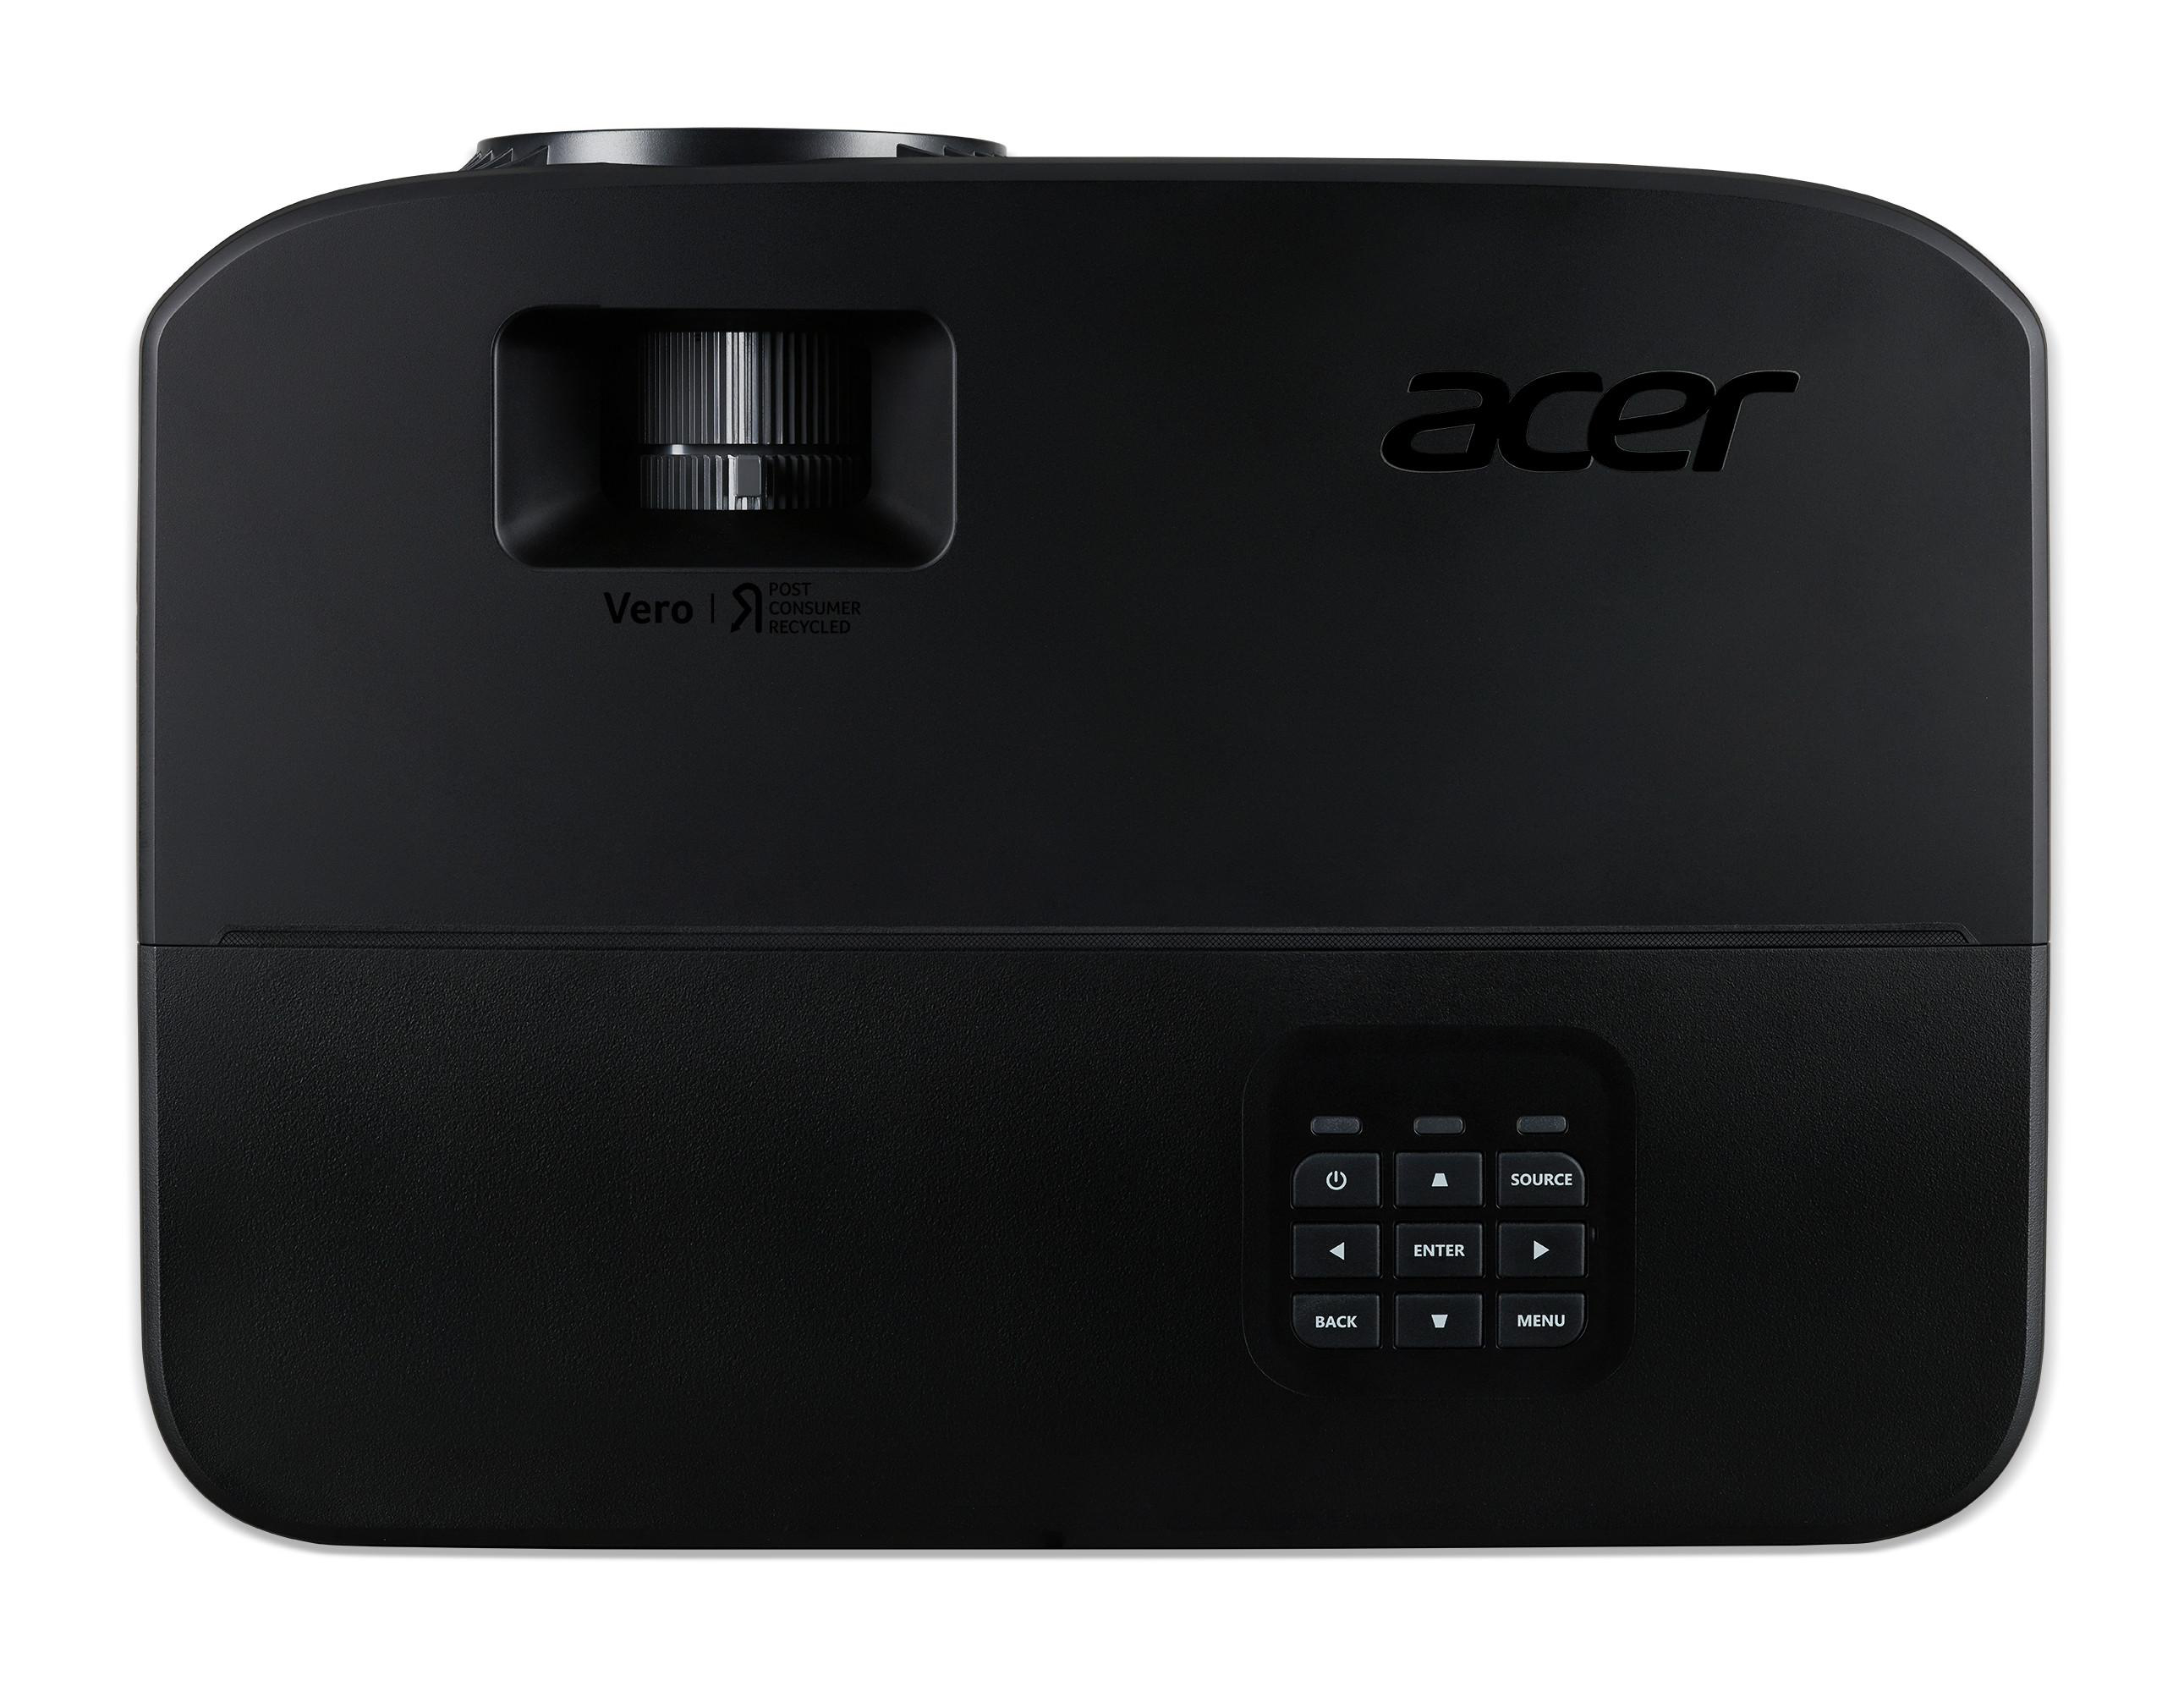 Beamer(Full-HD, PD2527i ACER ANSI-Lumen) 2700 Technik Grüne